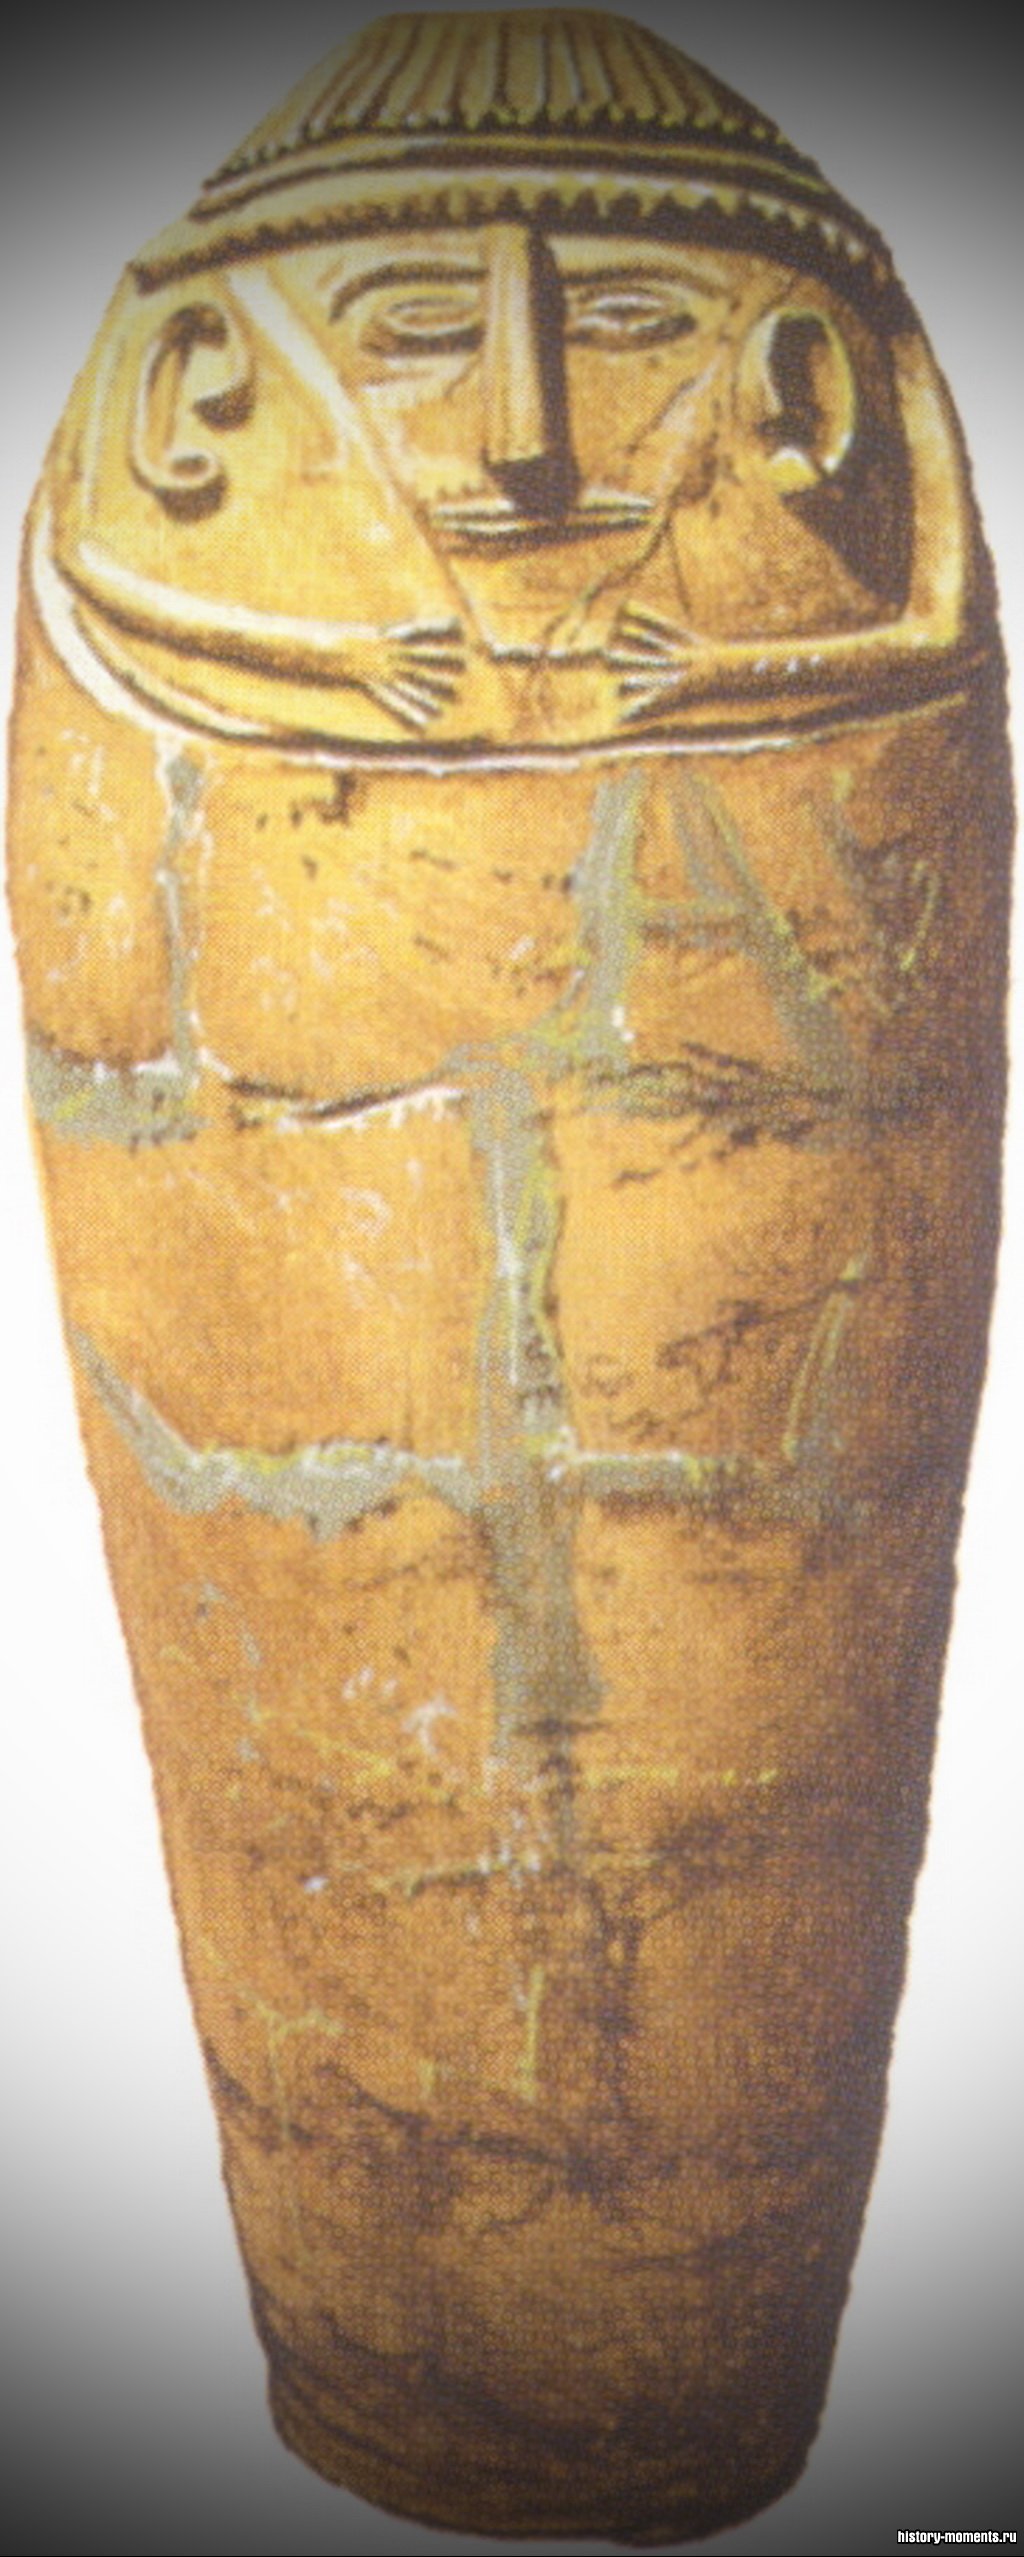 Филистимлянский саркофаг из обожженной глины.